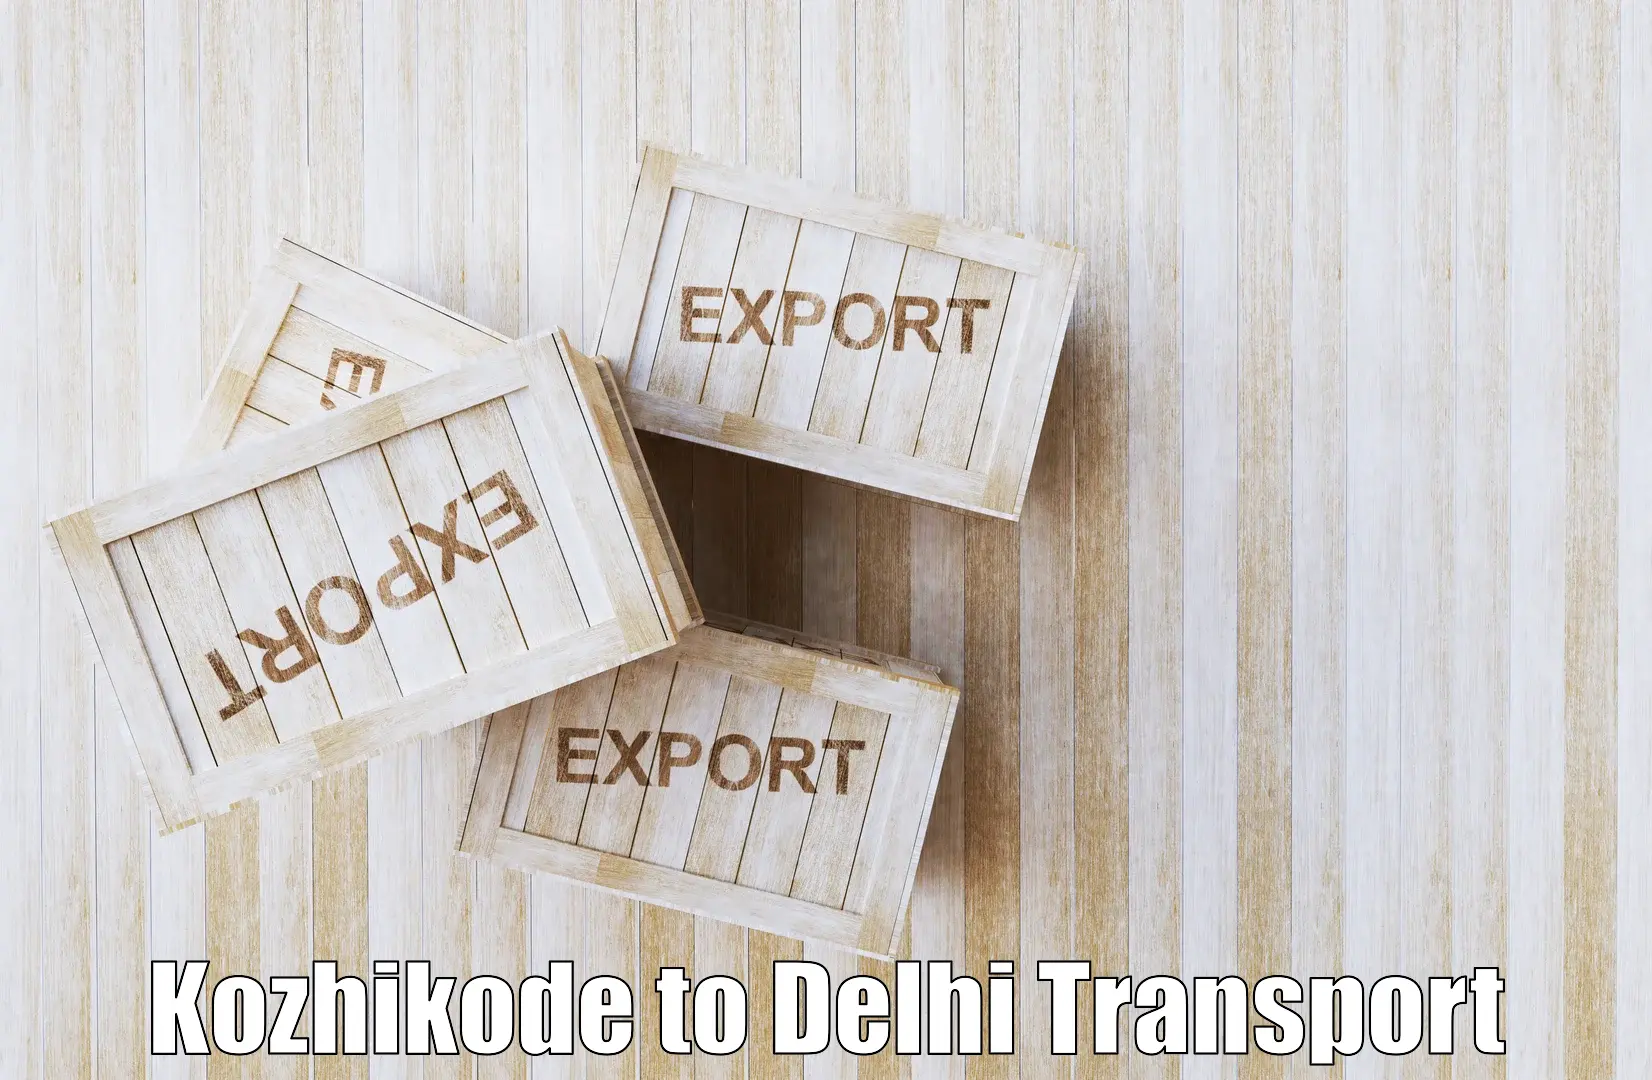 Air freight transport services Kozhikode to Jamia Millia Islamia New Delhi